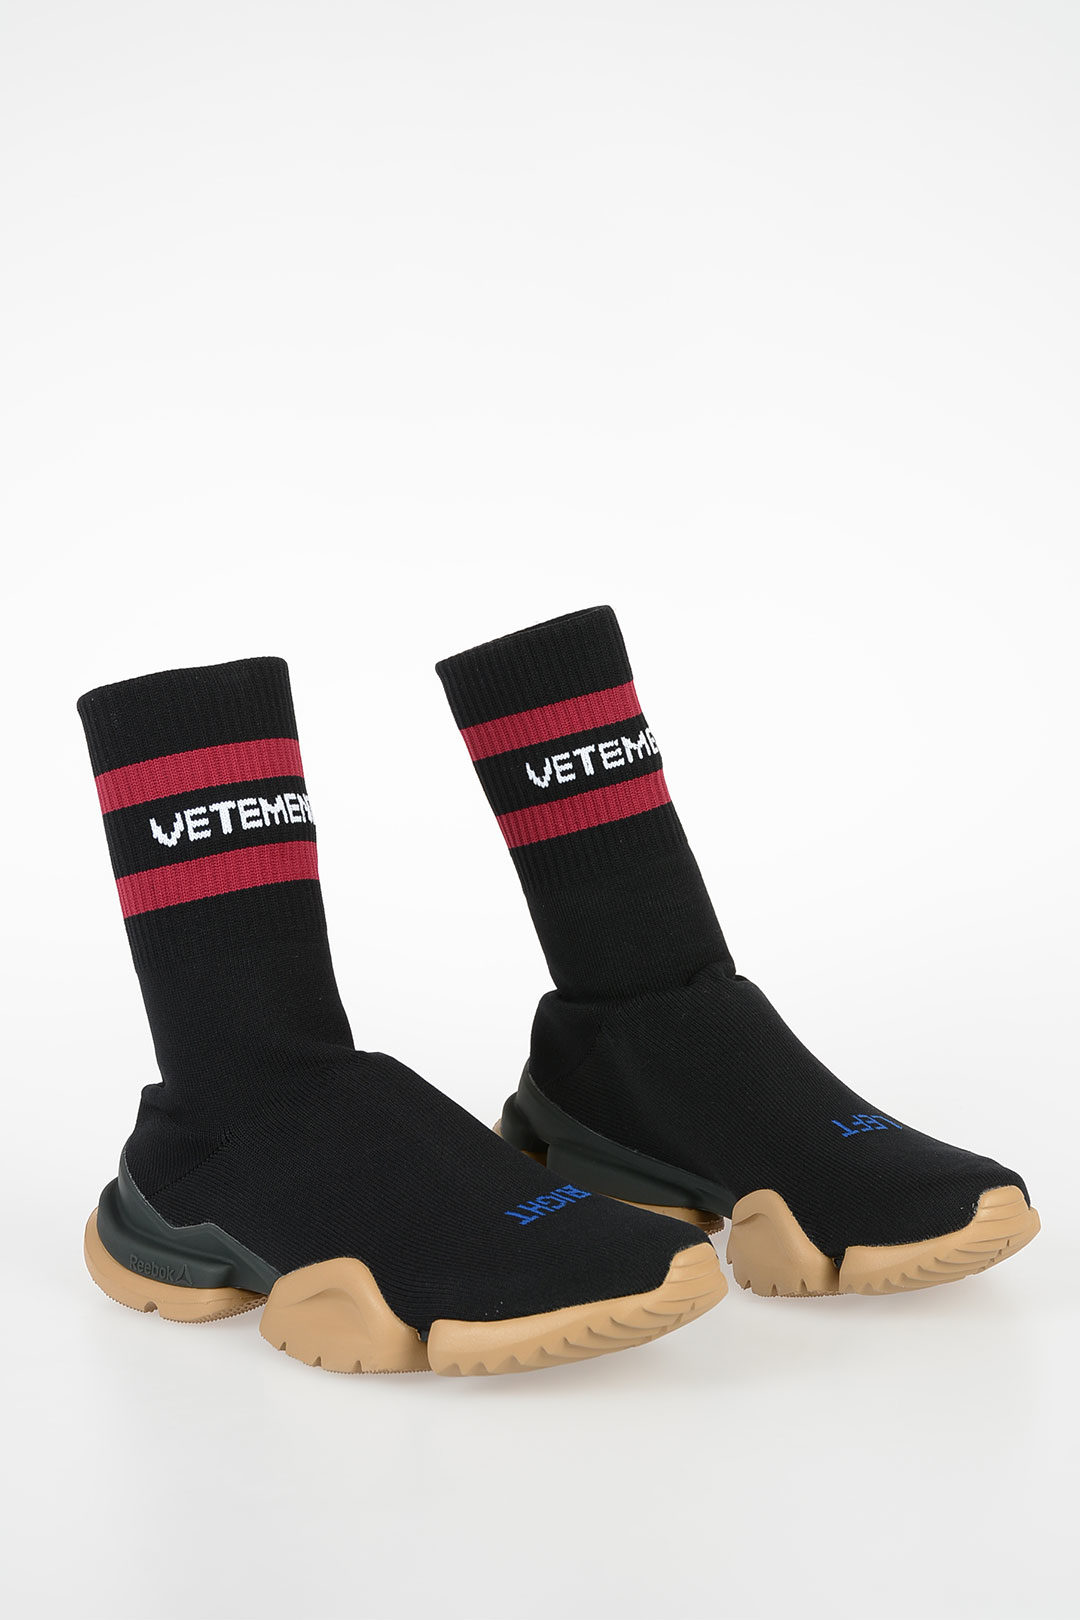 vetements socks sneakers